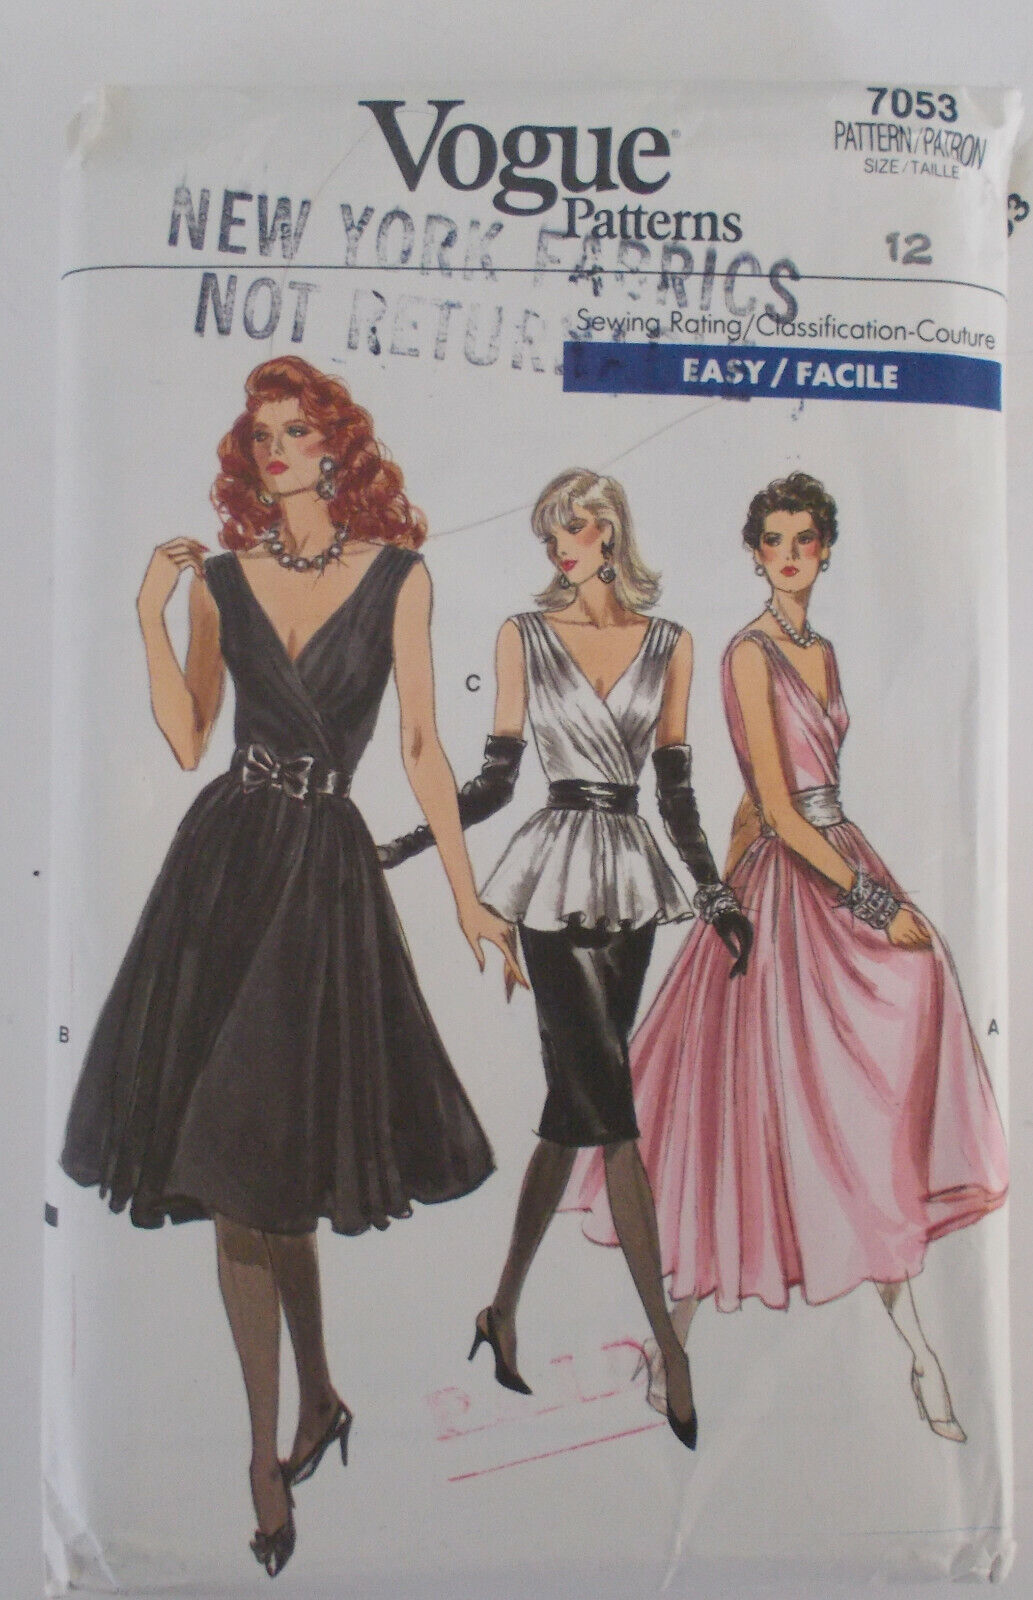 1987 Vogue Pattern Evening Dress Skirt Top #7053 UNCUT Size 12